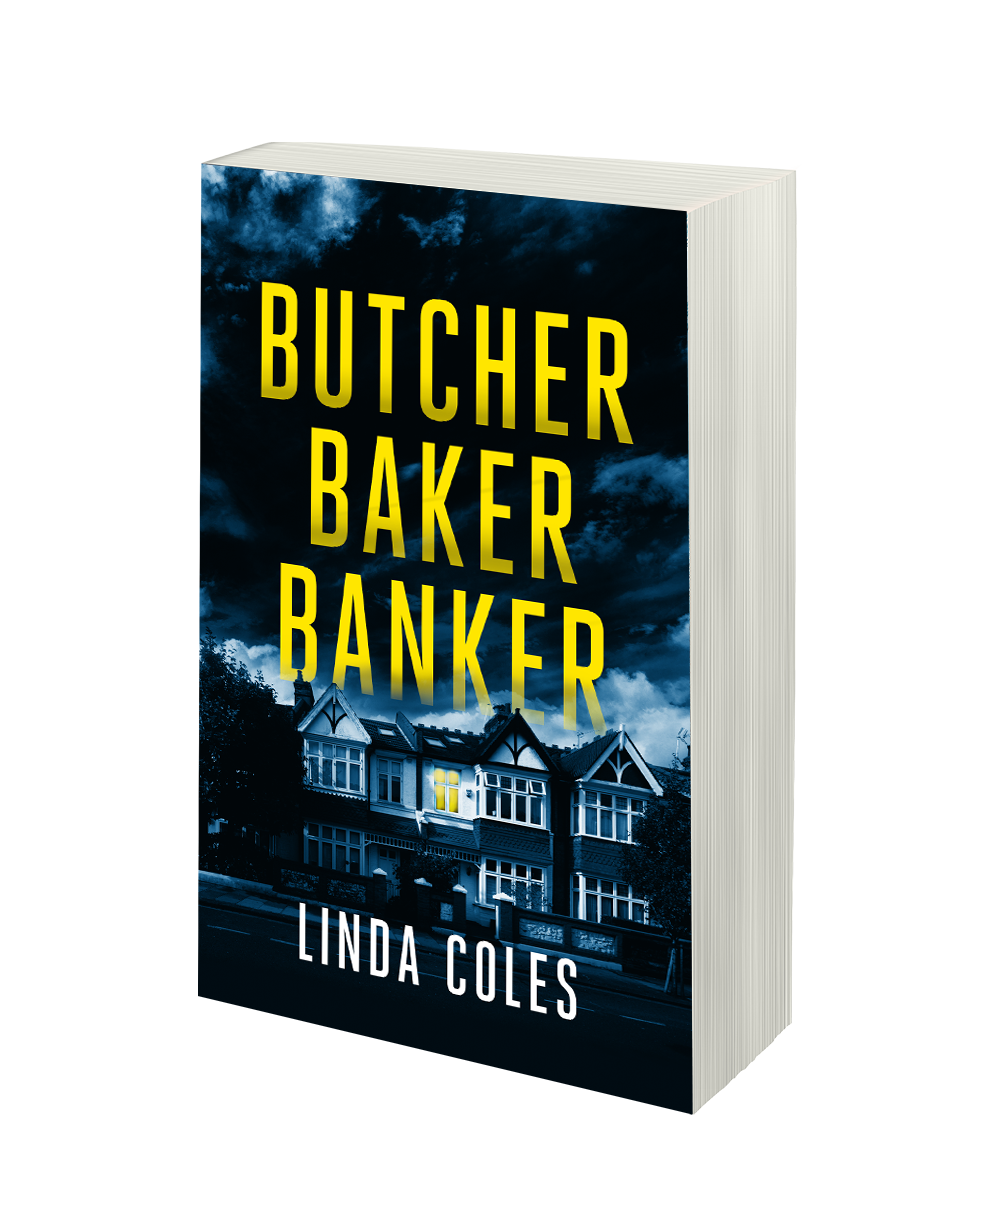 BUTCHER BAKER BANKER (BOOK7)